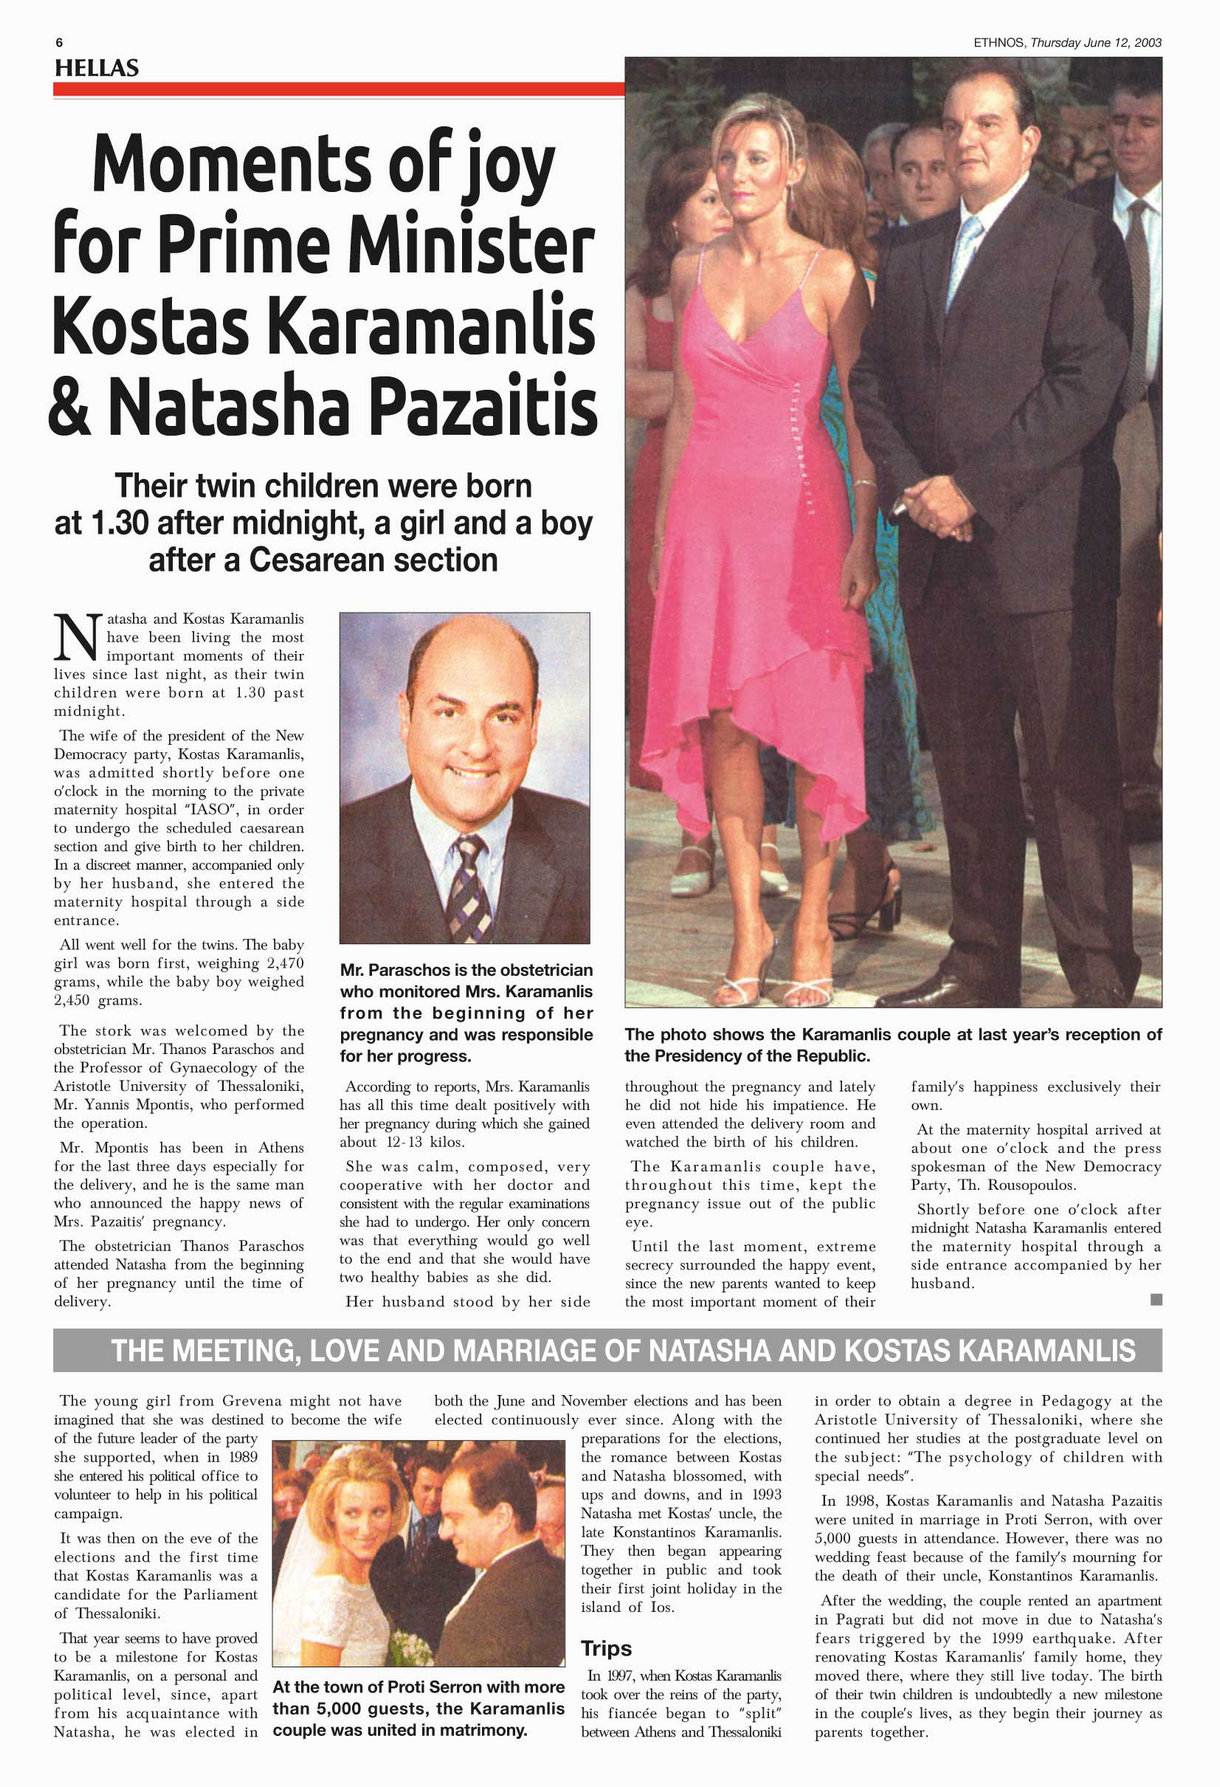 gemelli per il primo ministro kostas karamanlis